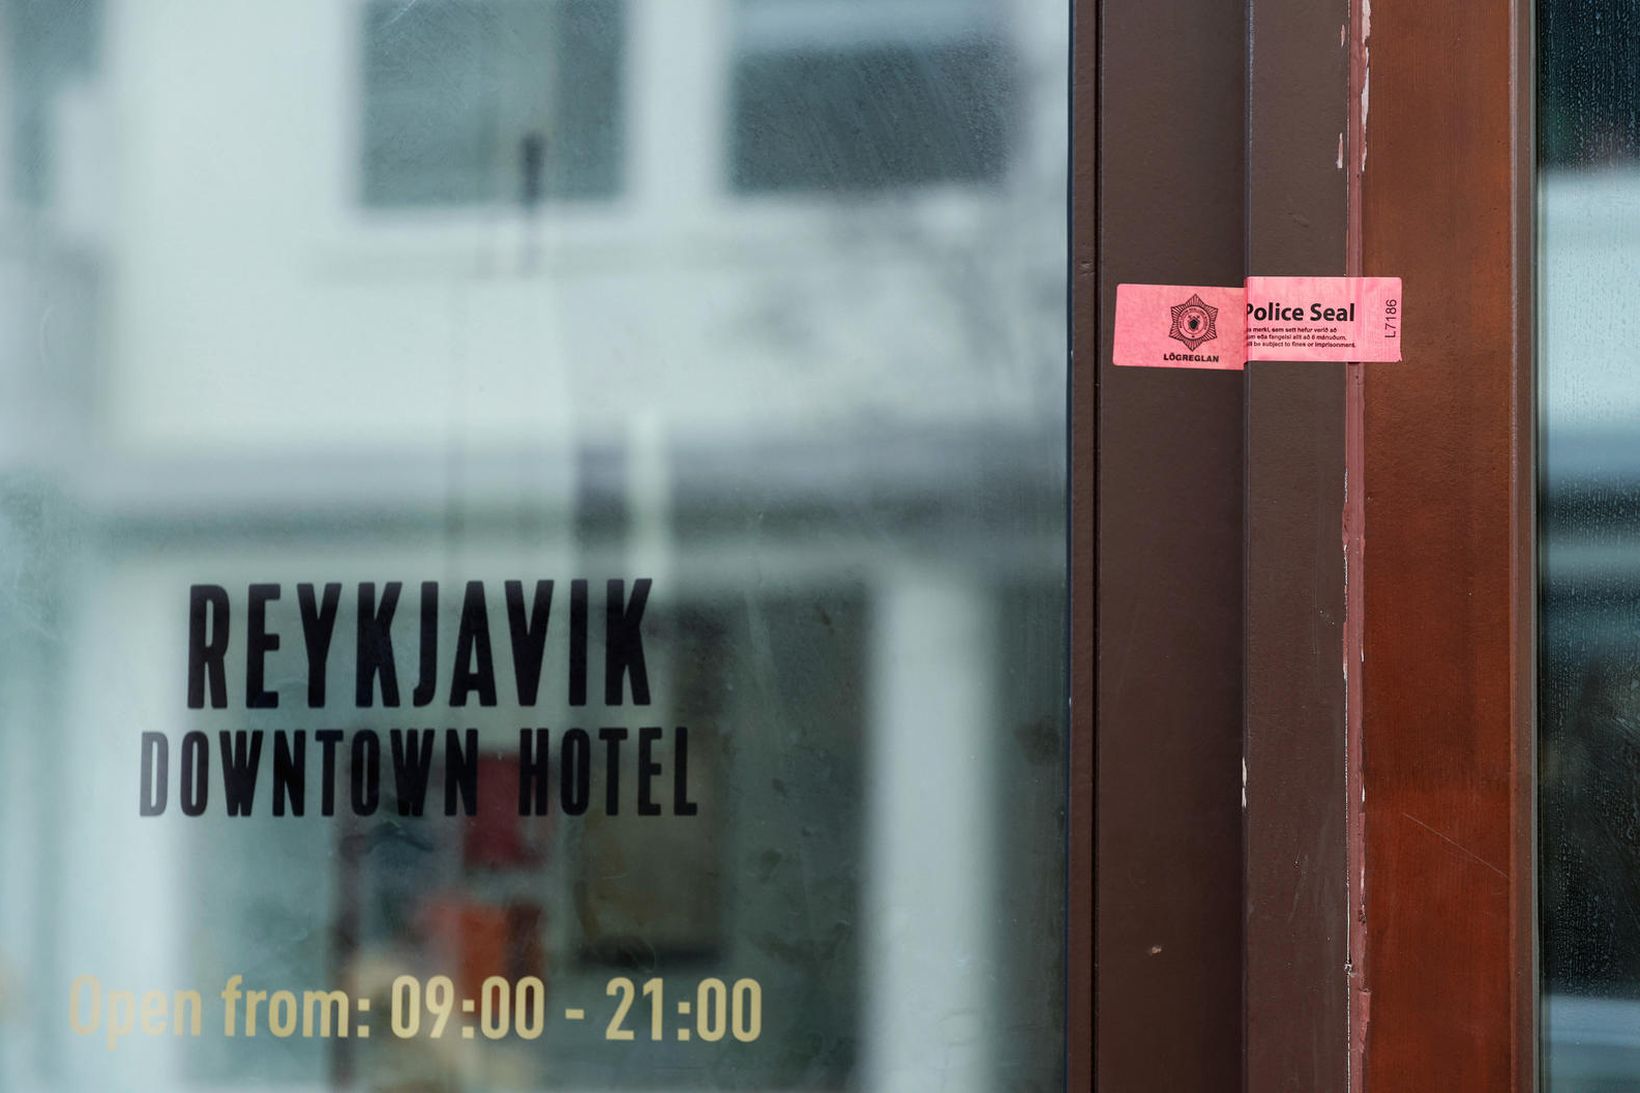 Reykjavik Downtown Hotel er nú innsiglað eftir aðgerðir lögreglu